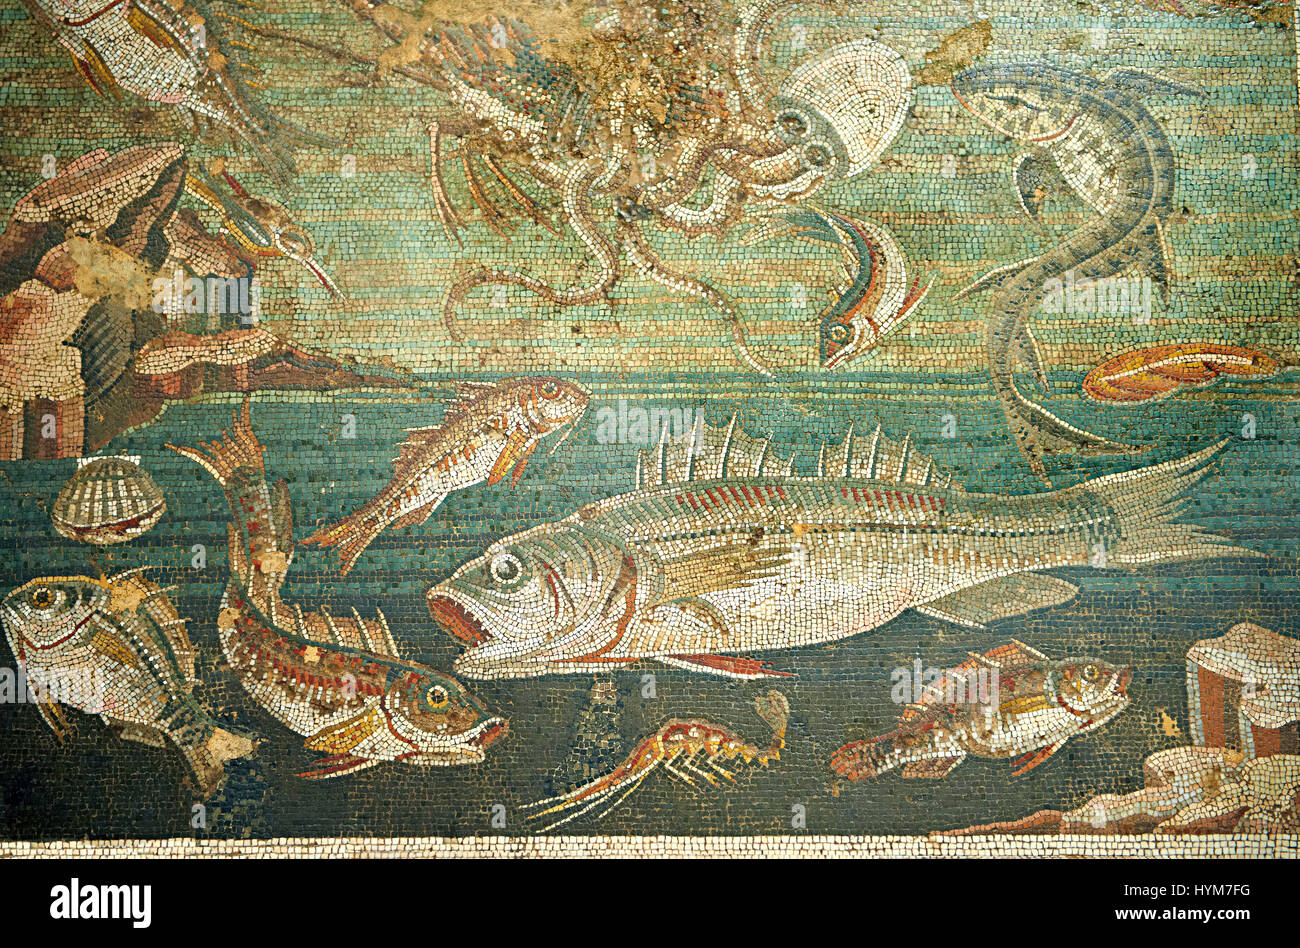 Mosaïque romaine de poissons marins de Pompéi, Casa del Fauno )VI, 12, 2), inv 9997 Musée archéologique de Naples, Italie Banque D'Images